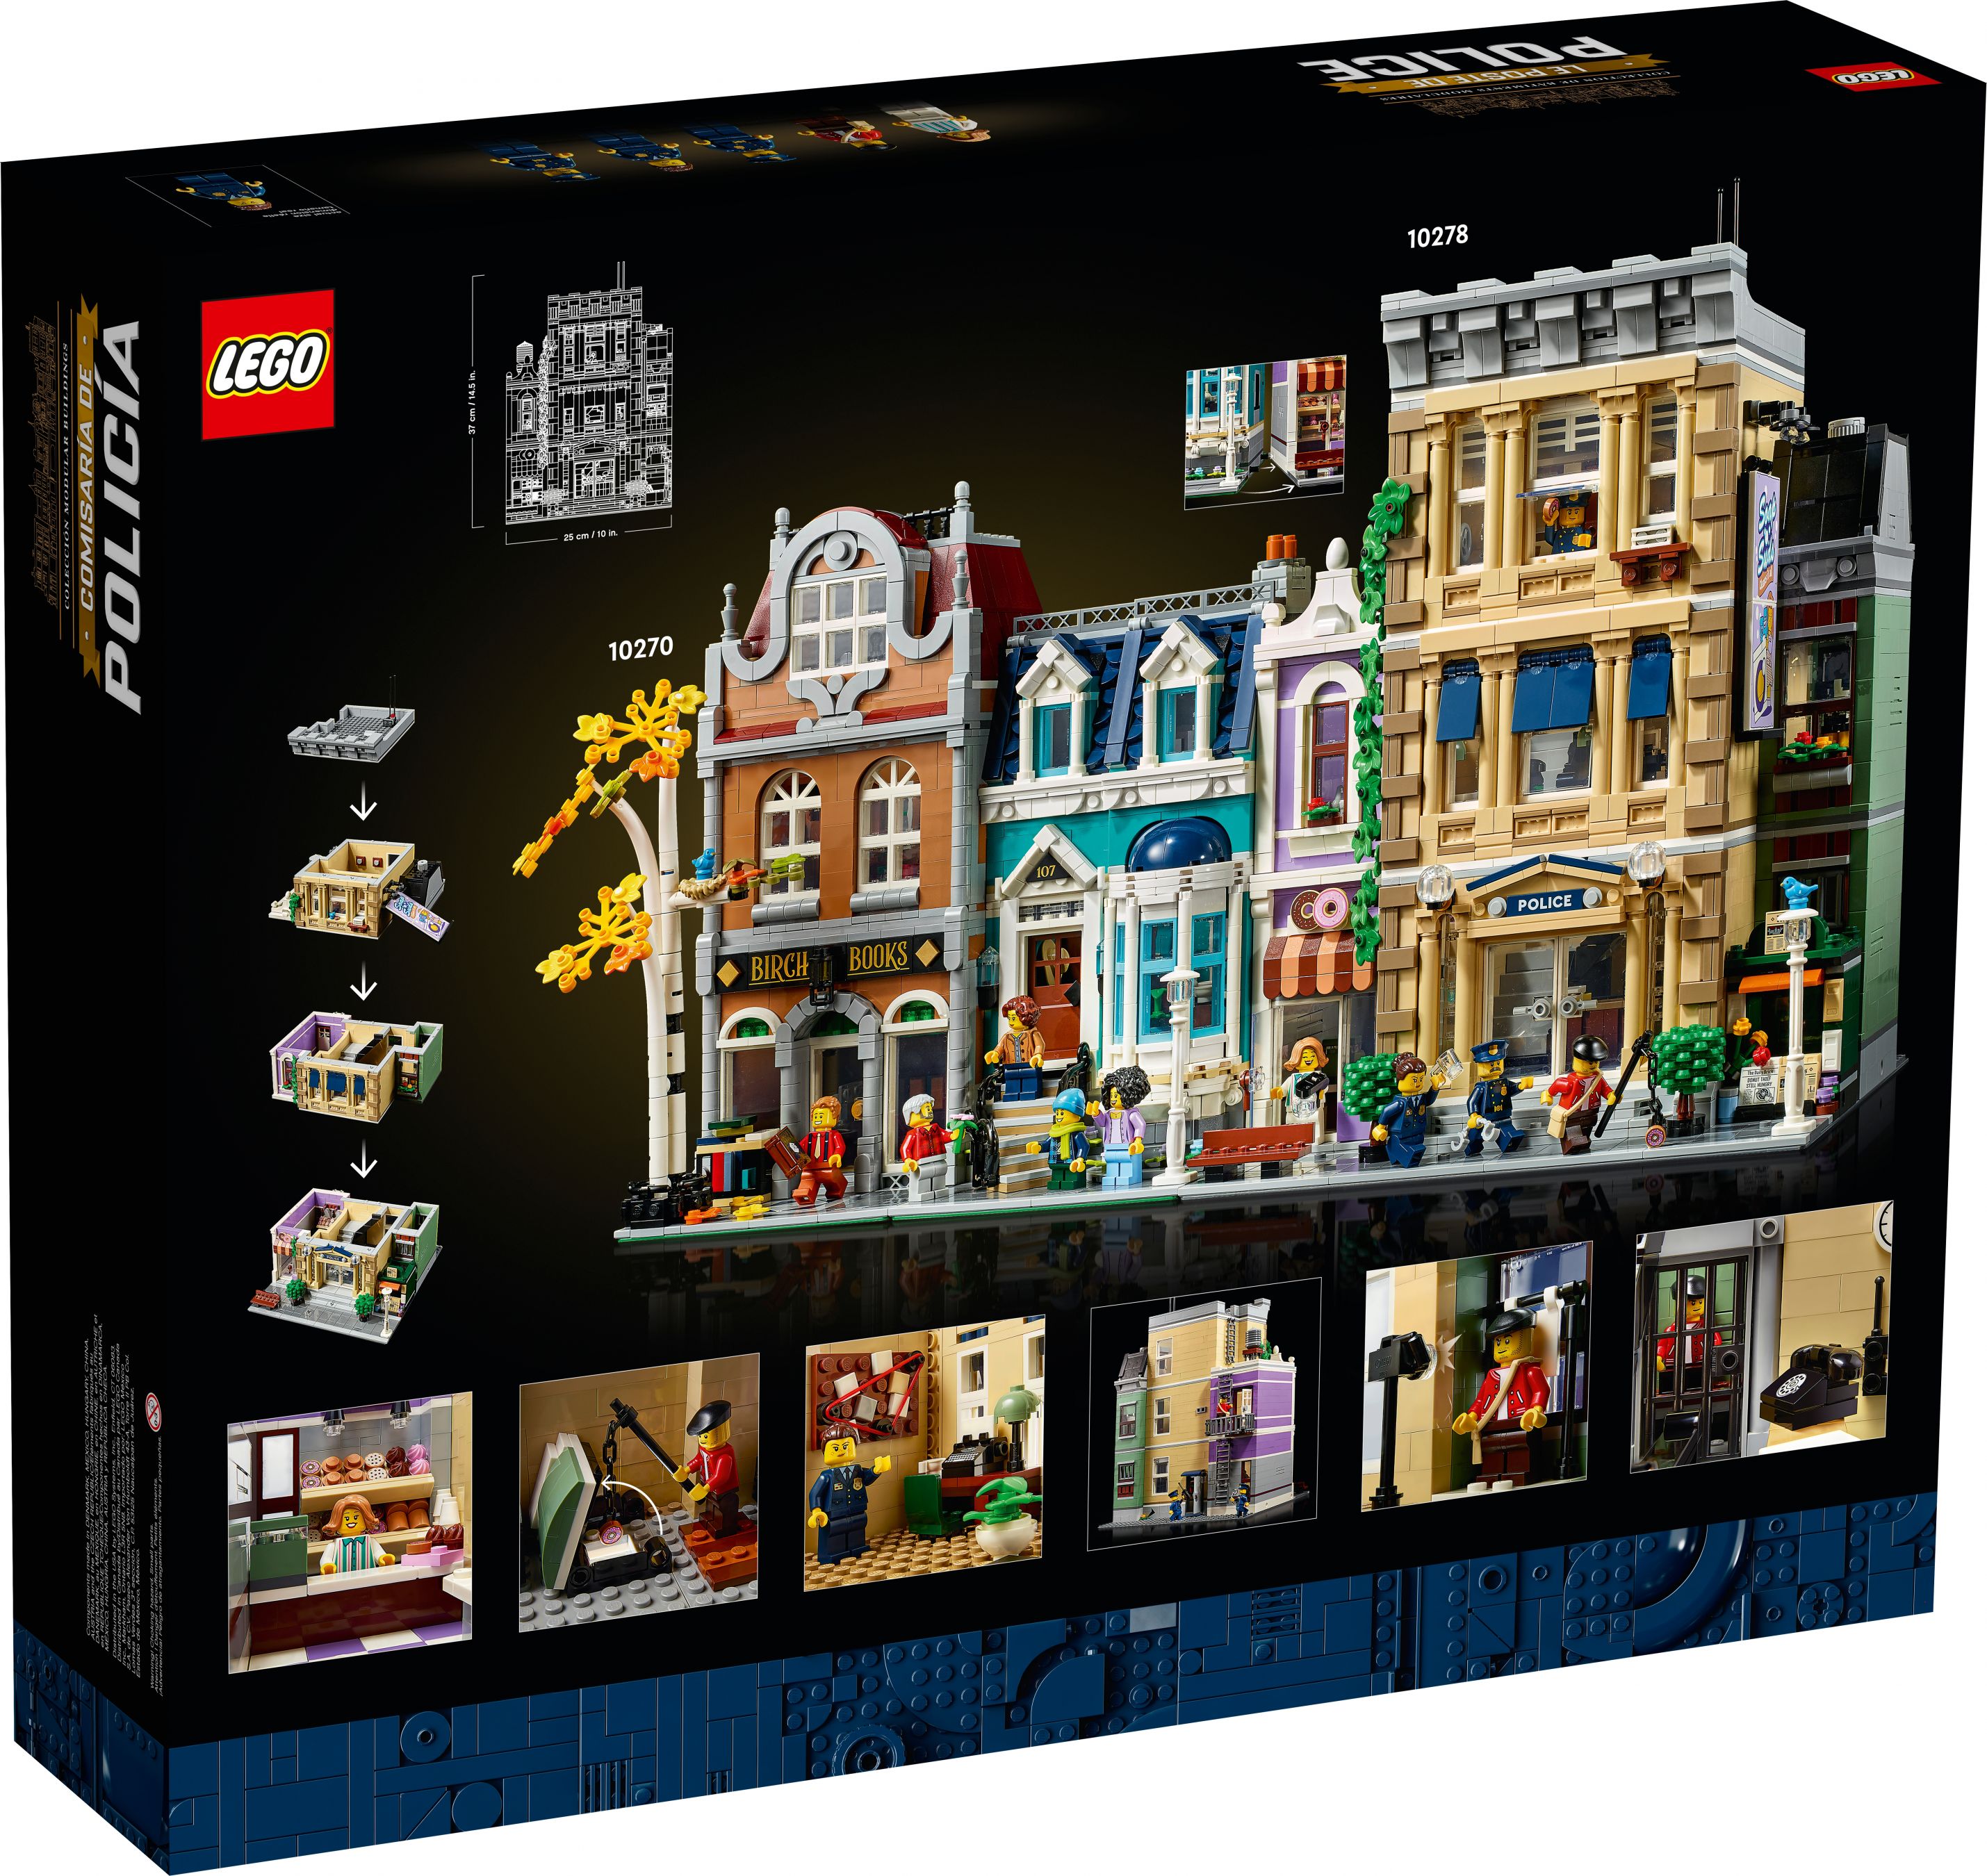 LEGO Advanced Models 10278 Polizeistation LEGO_10278_Box5_v39.jpg